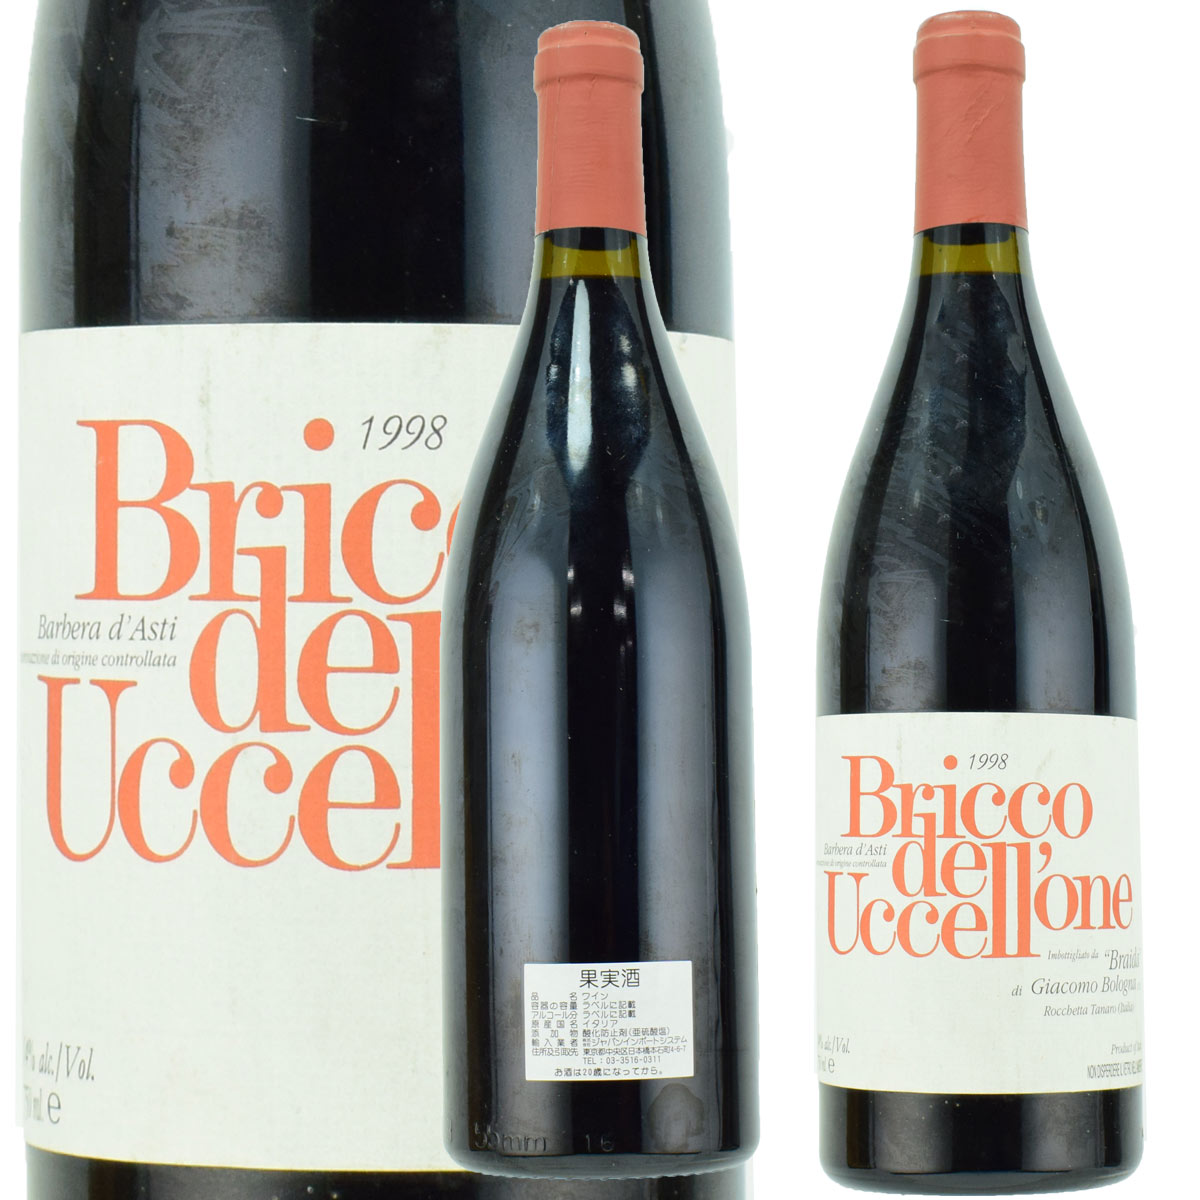 バルベーラ ダスティ　ブリッコ デル ウッチェッローネ　1998　750ml赤　ブライダ　イタリアワイン　Barbera d’Asti DOCG Bricco dell’Uccellone